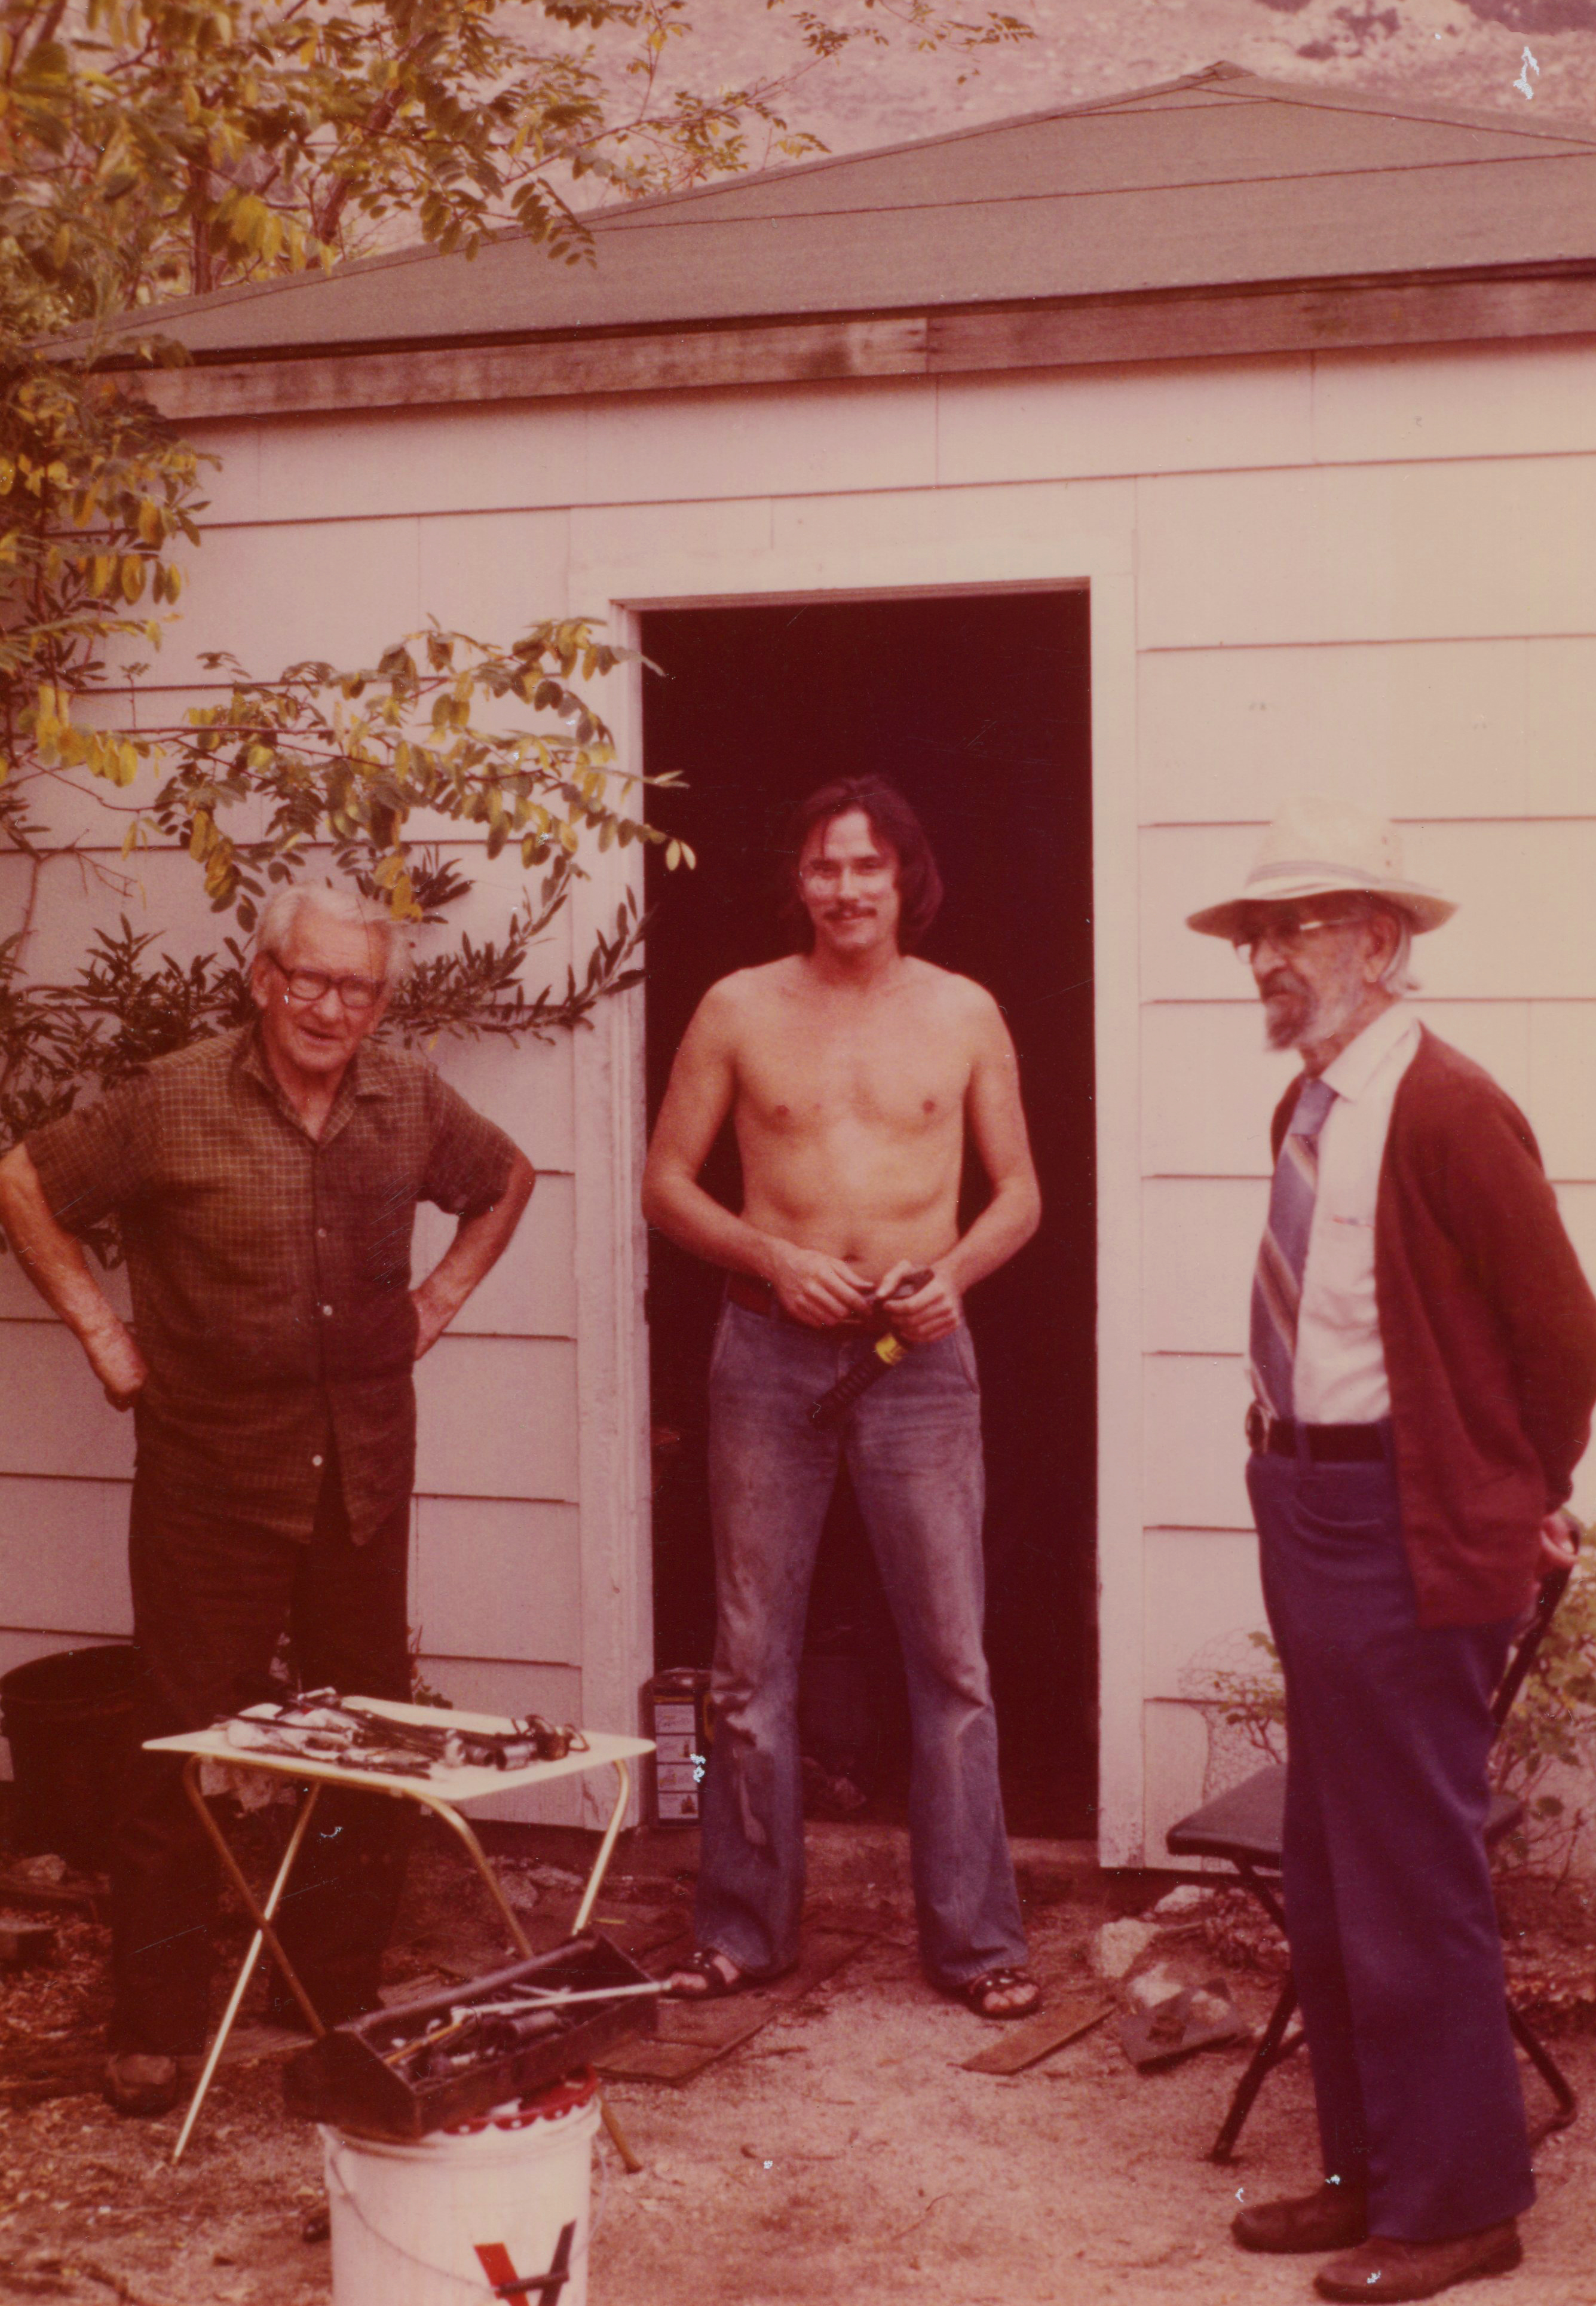 1983 FMW, Gene & John repairing the generator